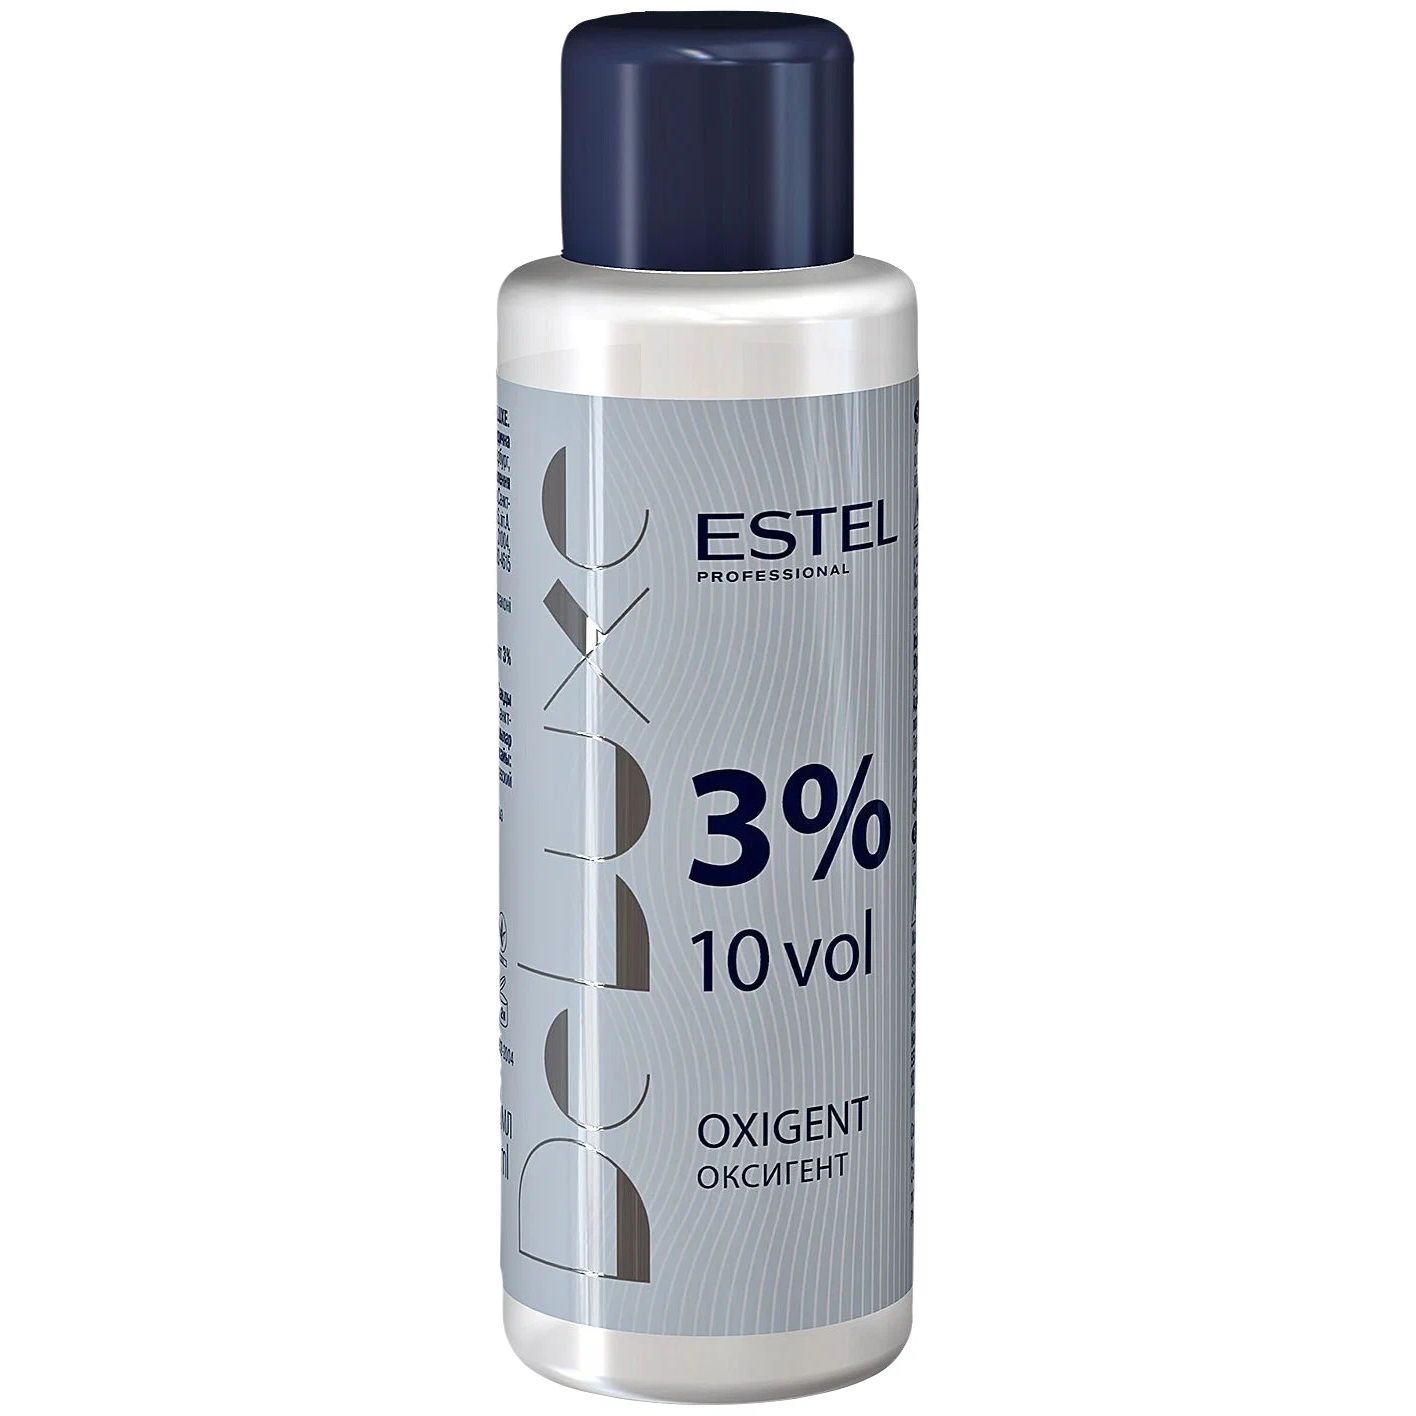 Проявитель Estel Professional De Luxe Oxigent 3% 60 мл проявитель estel professional de luxe oxigent 3% 900 мл